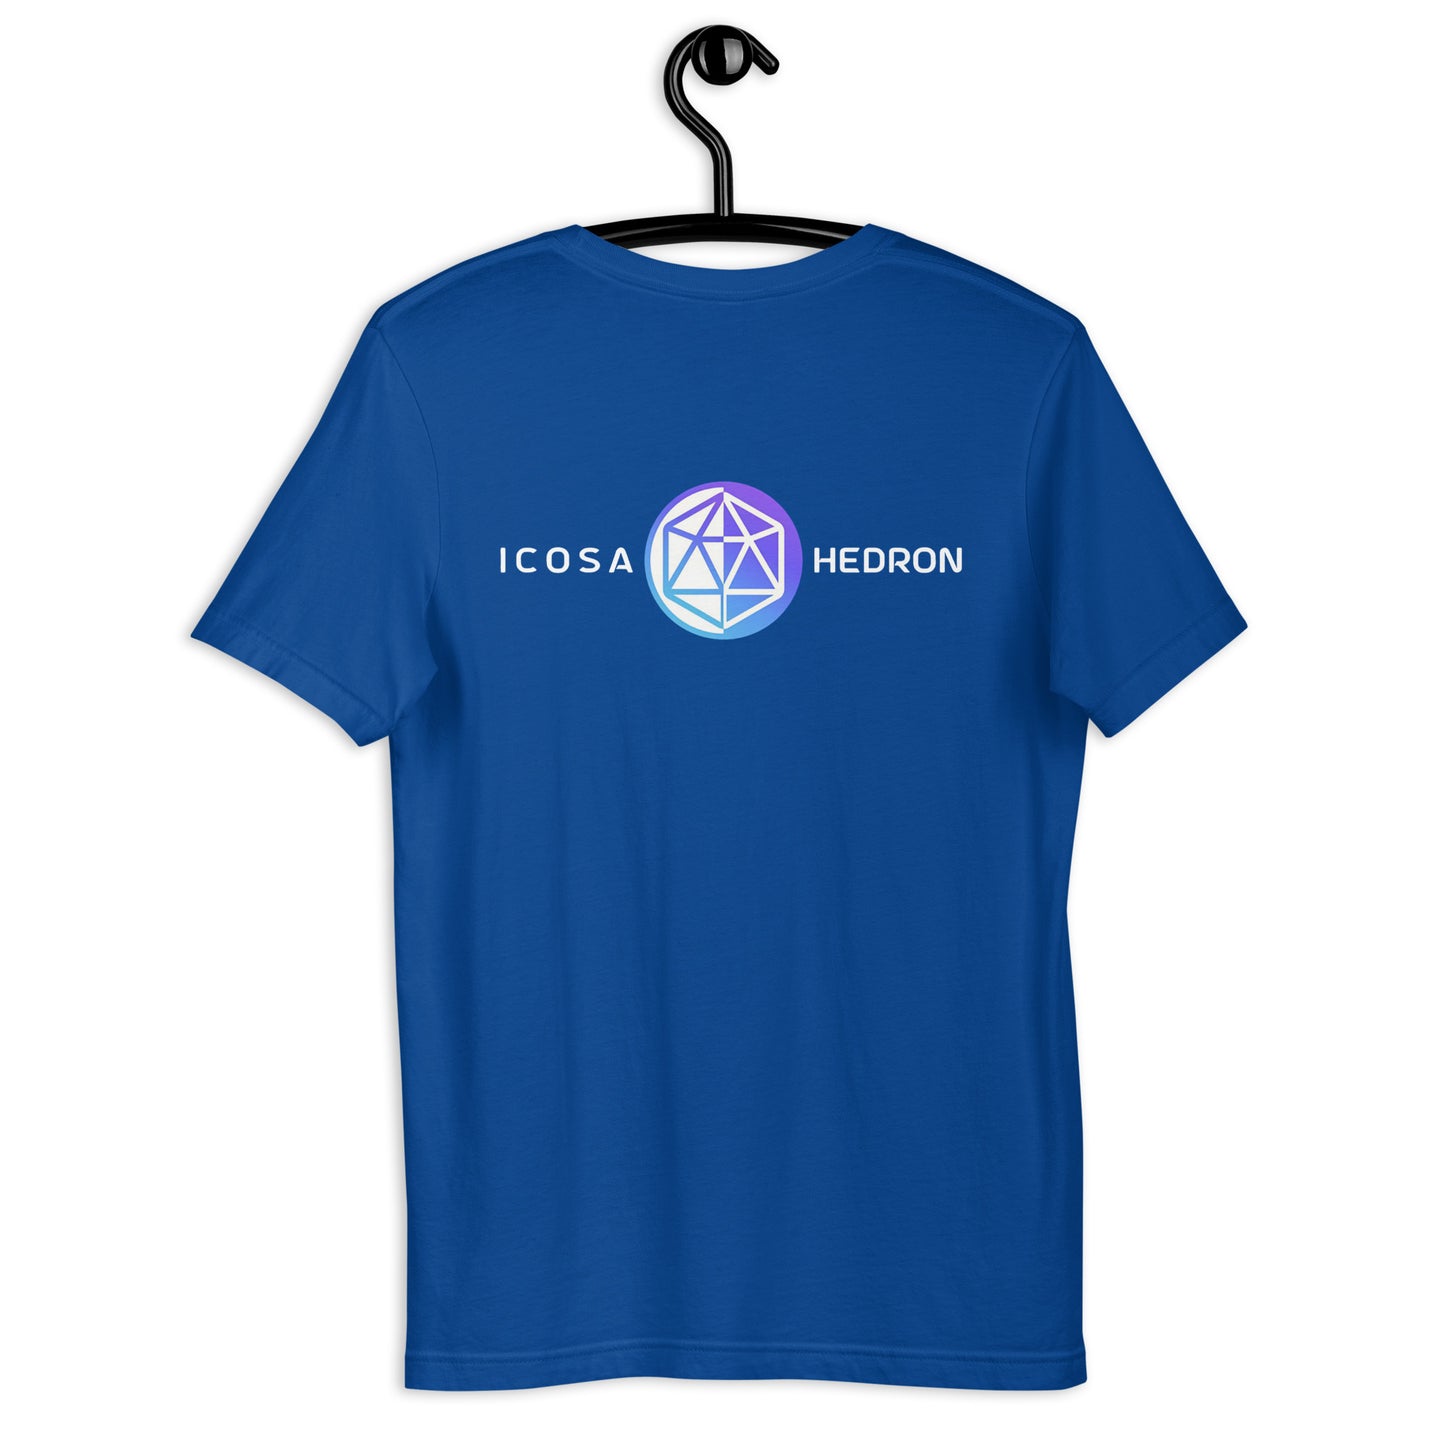 Hedron / Icosa Unisex T-Shirt (Front & Back)